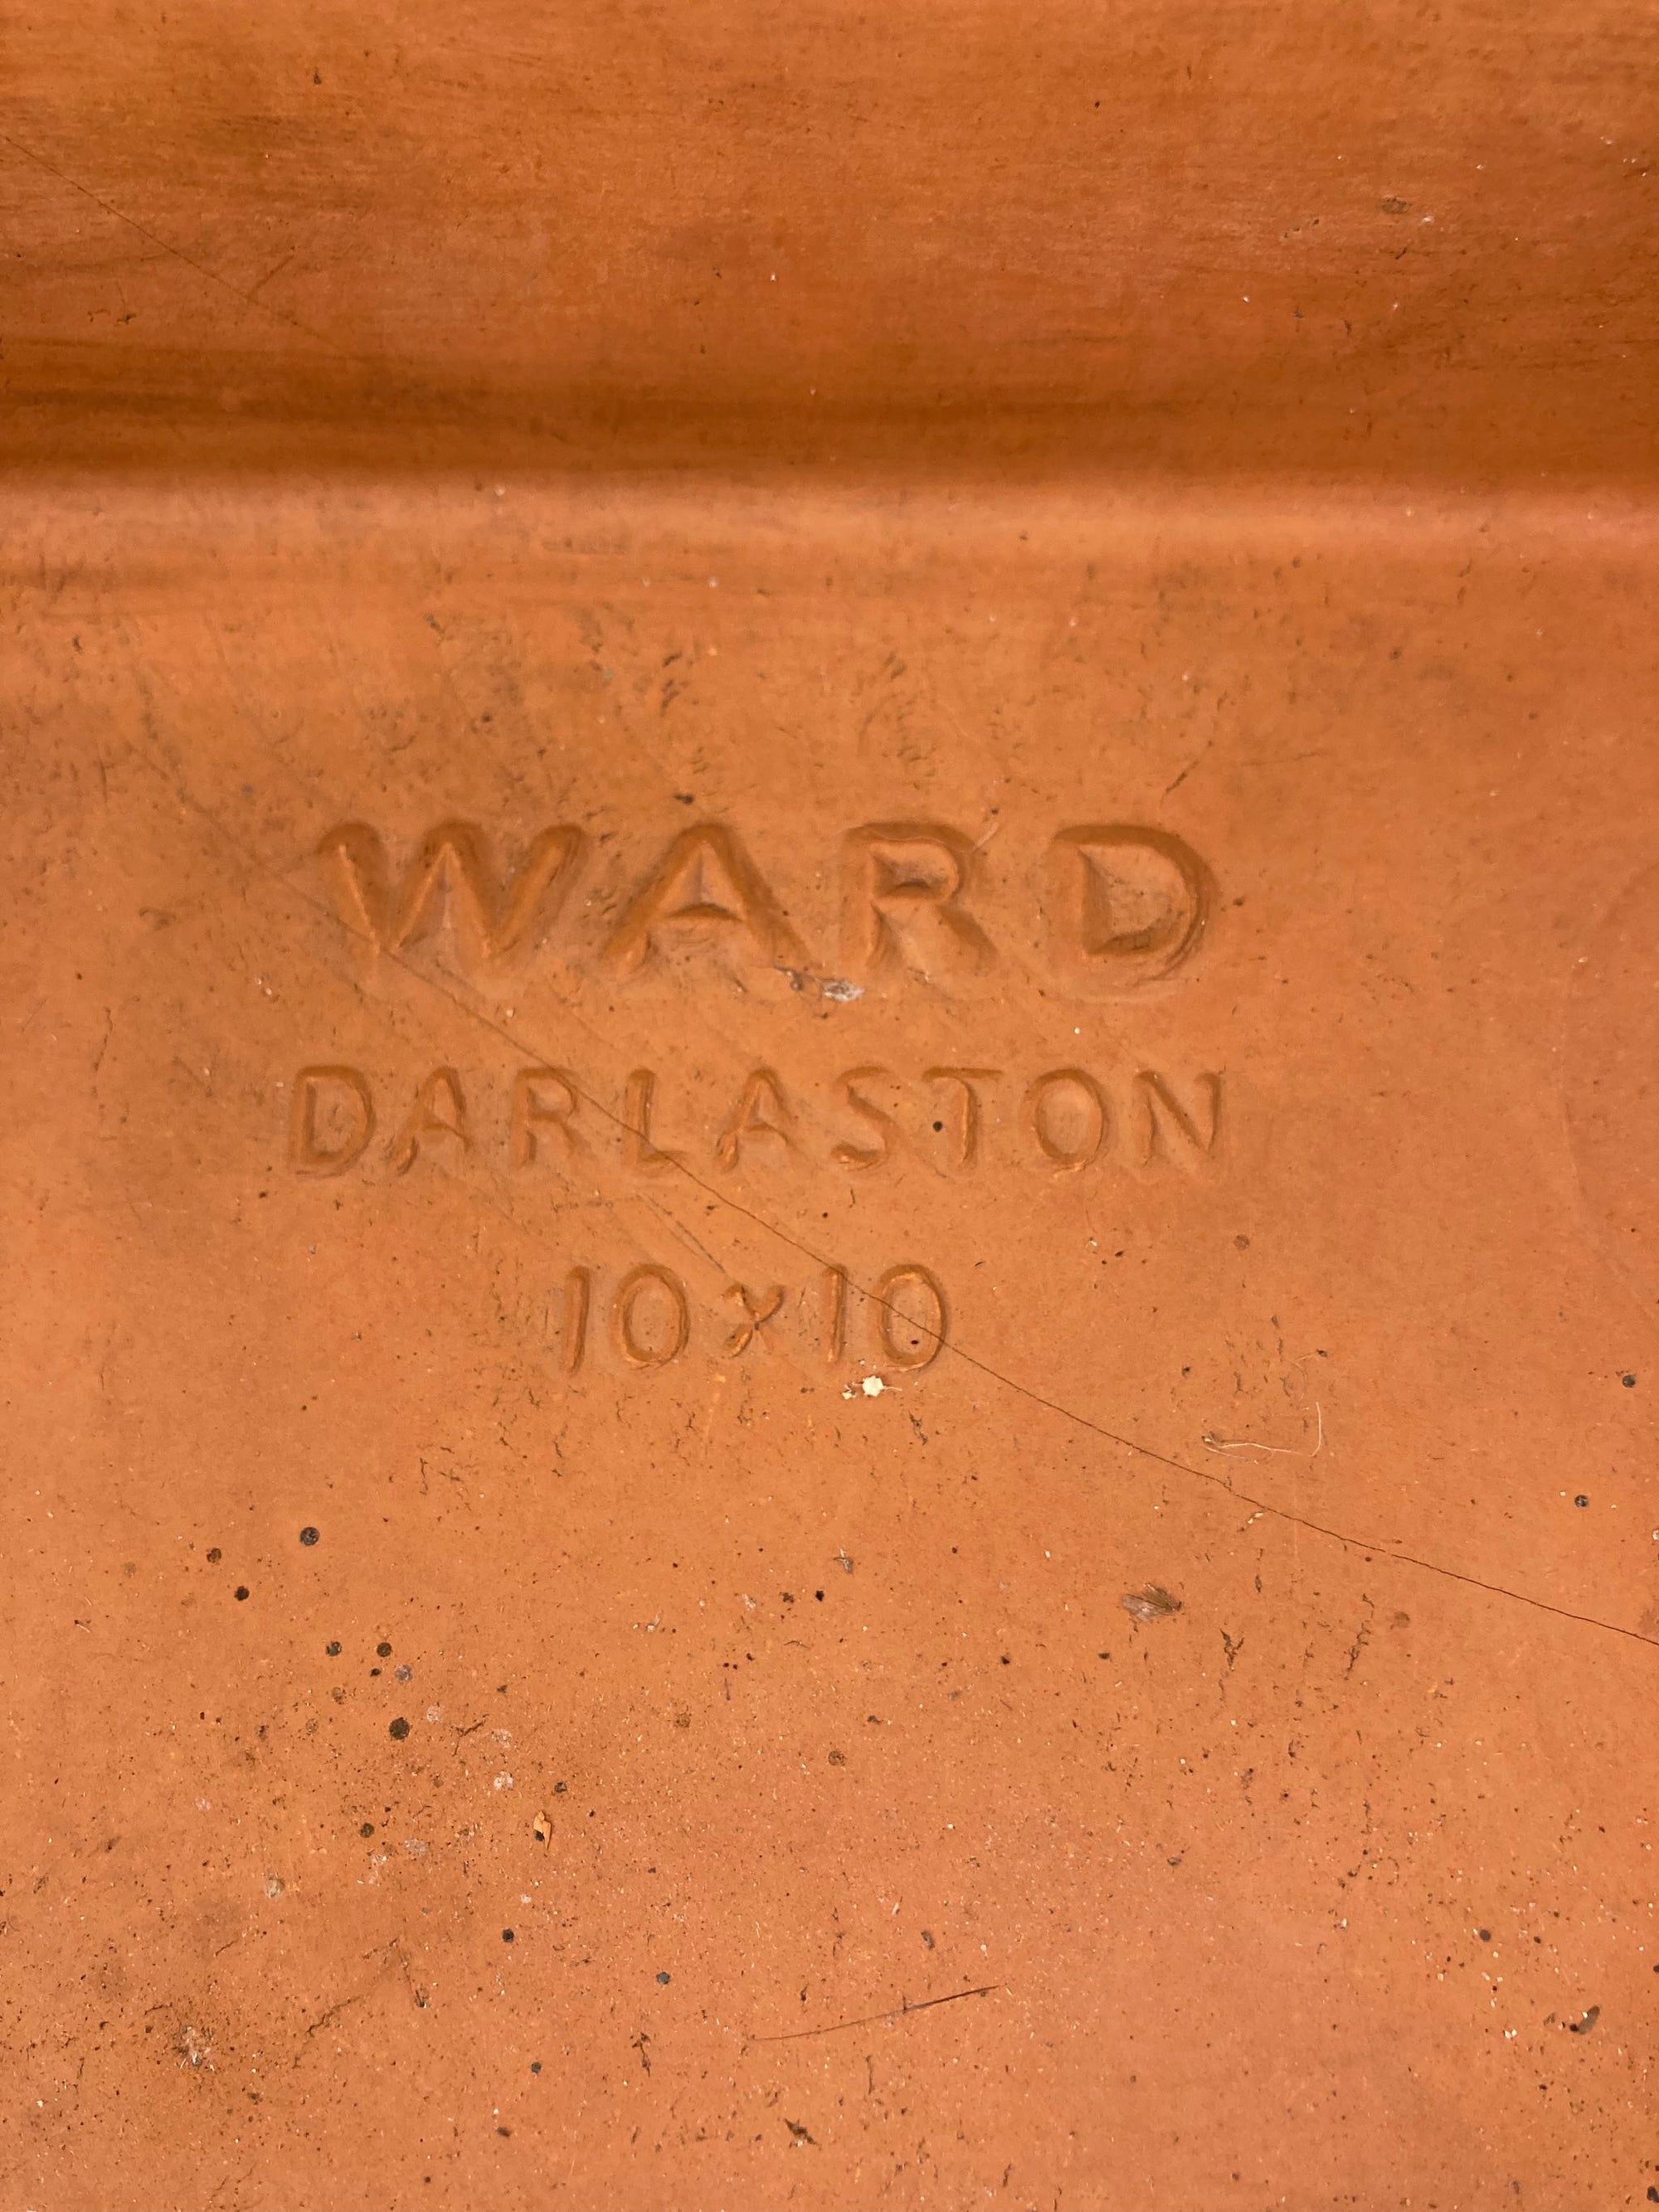 Ward Darlaston Terracotta Alpine Pan